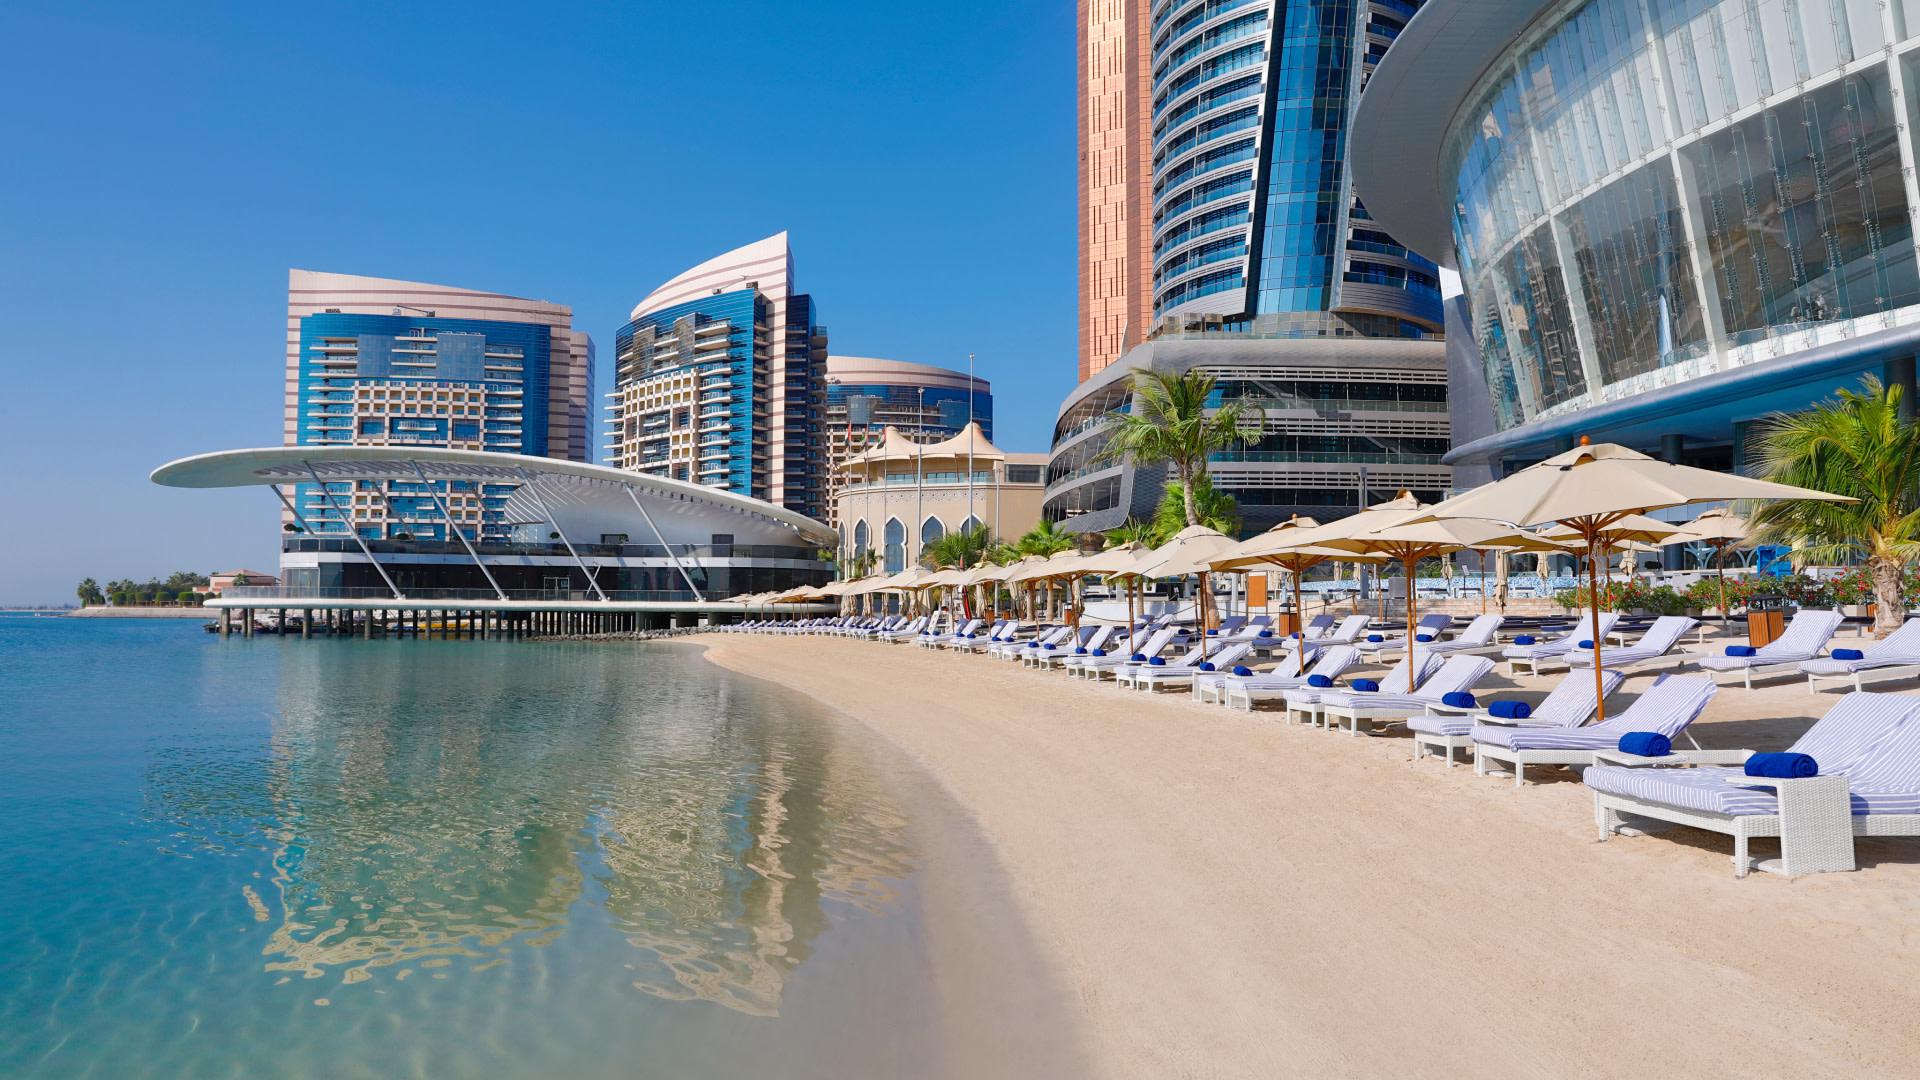 Conrad Abu Dhabi Etihad Towers - Abu Dhabi - Verenigde Arabische Emiraten